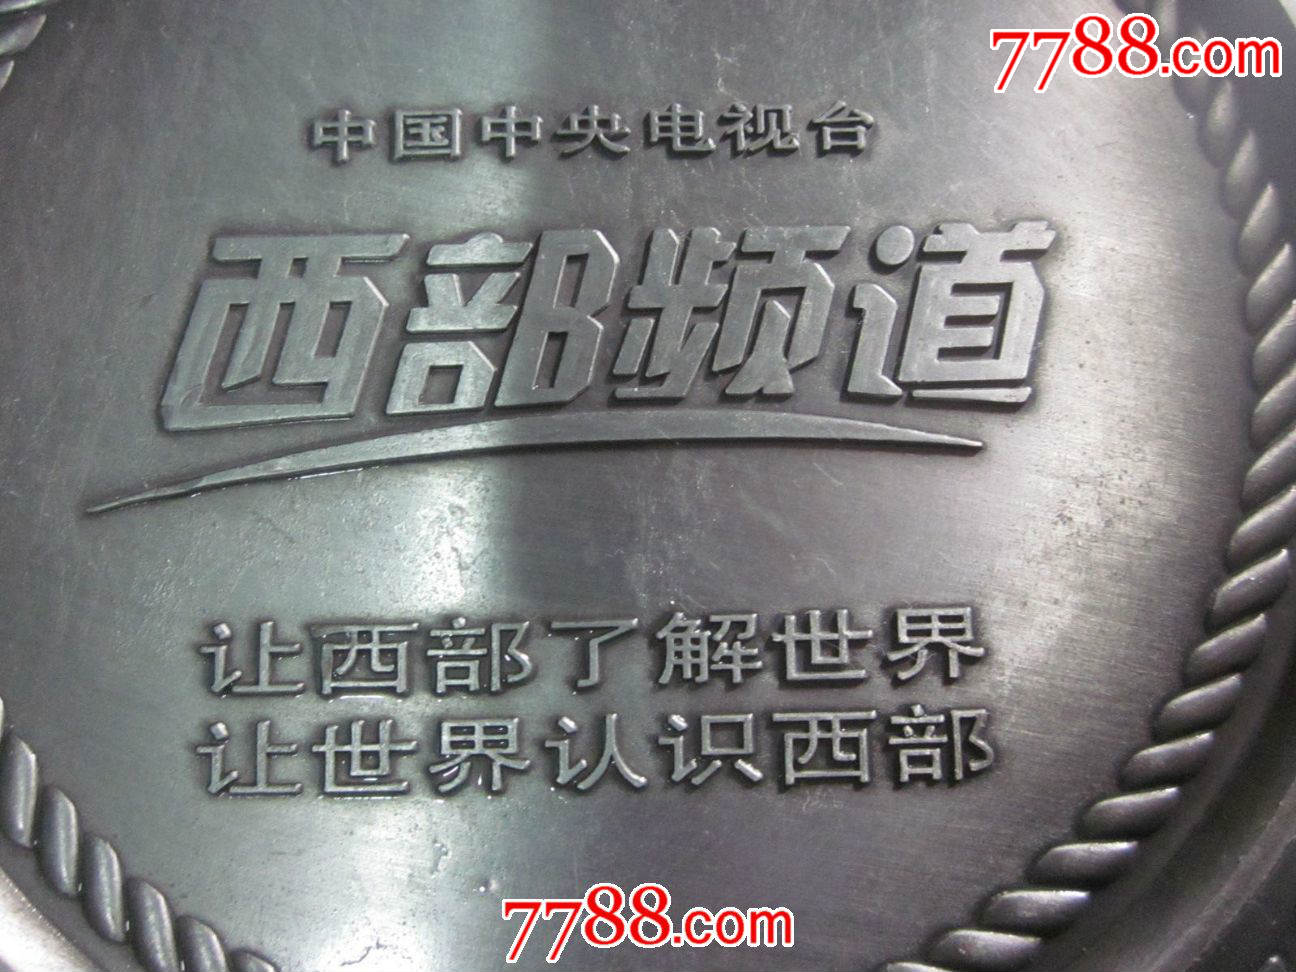 中国中*电视台西部频道开播纪念金属盘,直径18cm